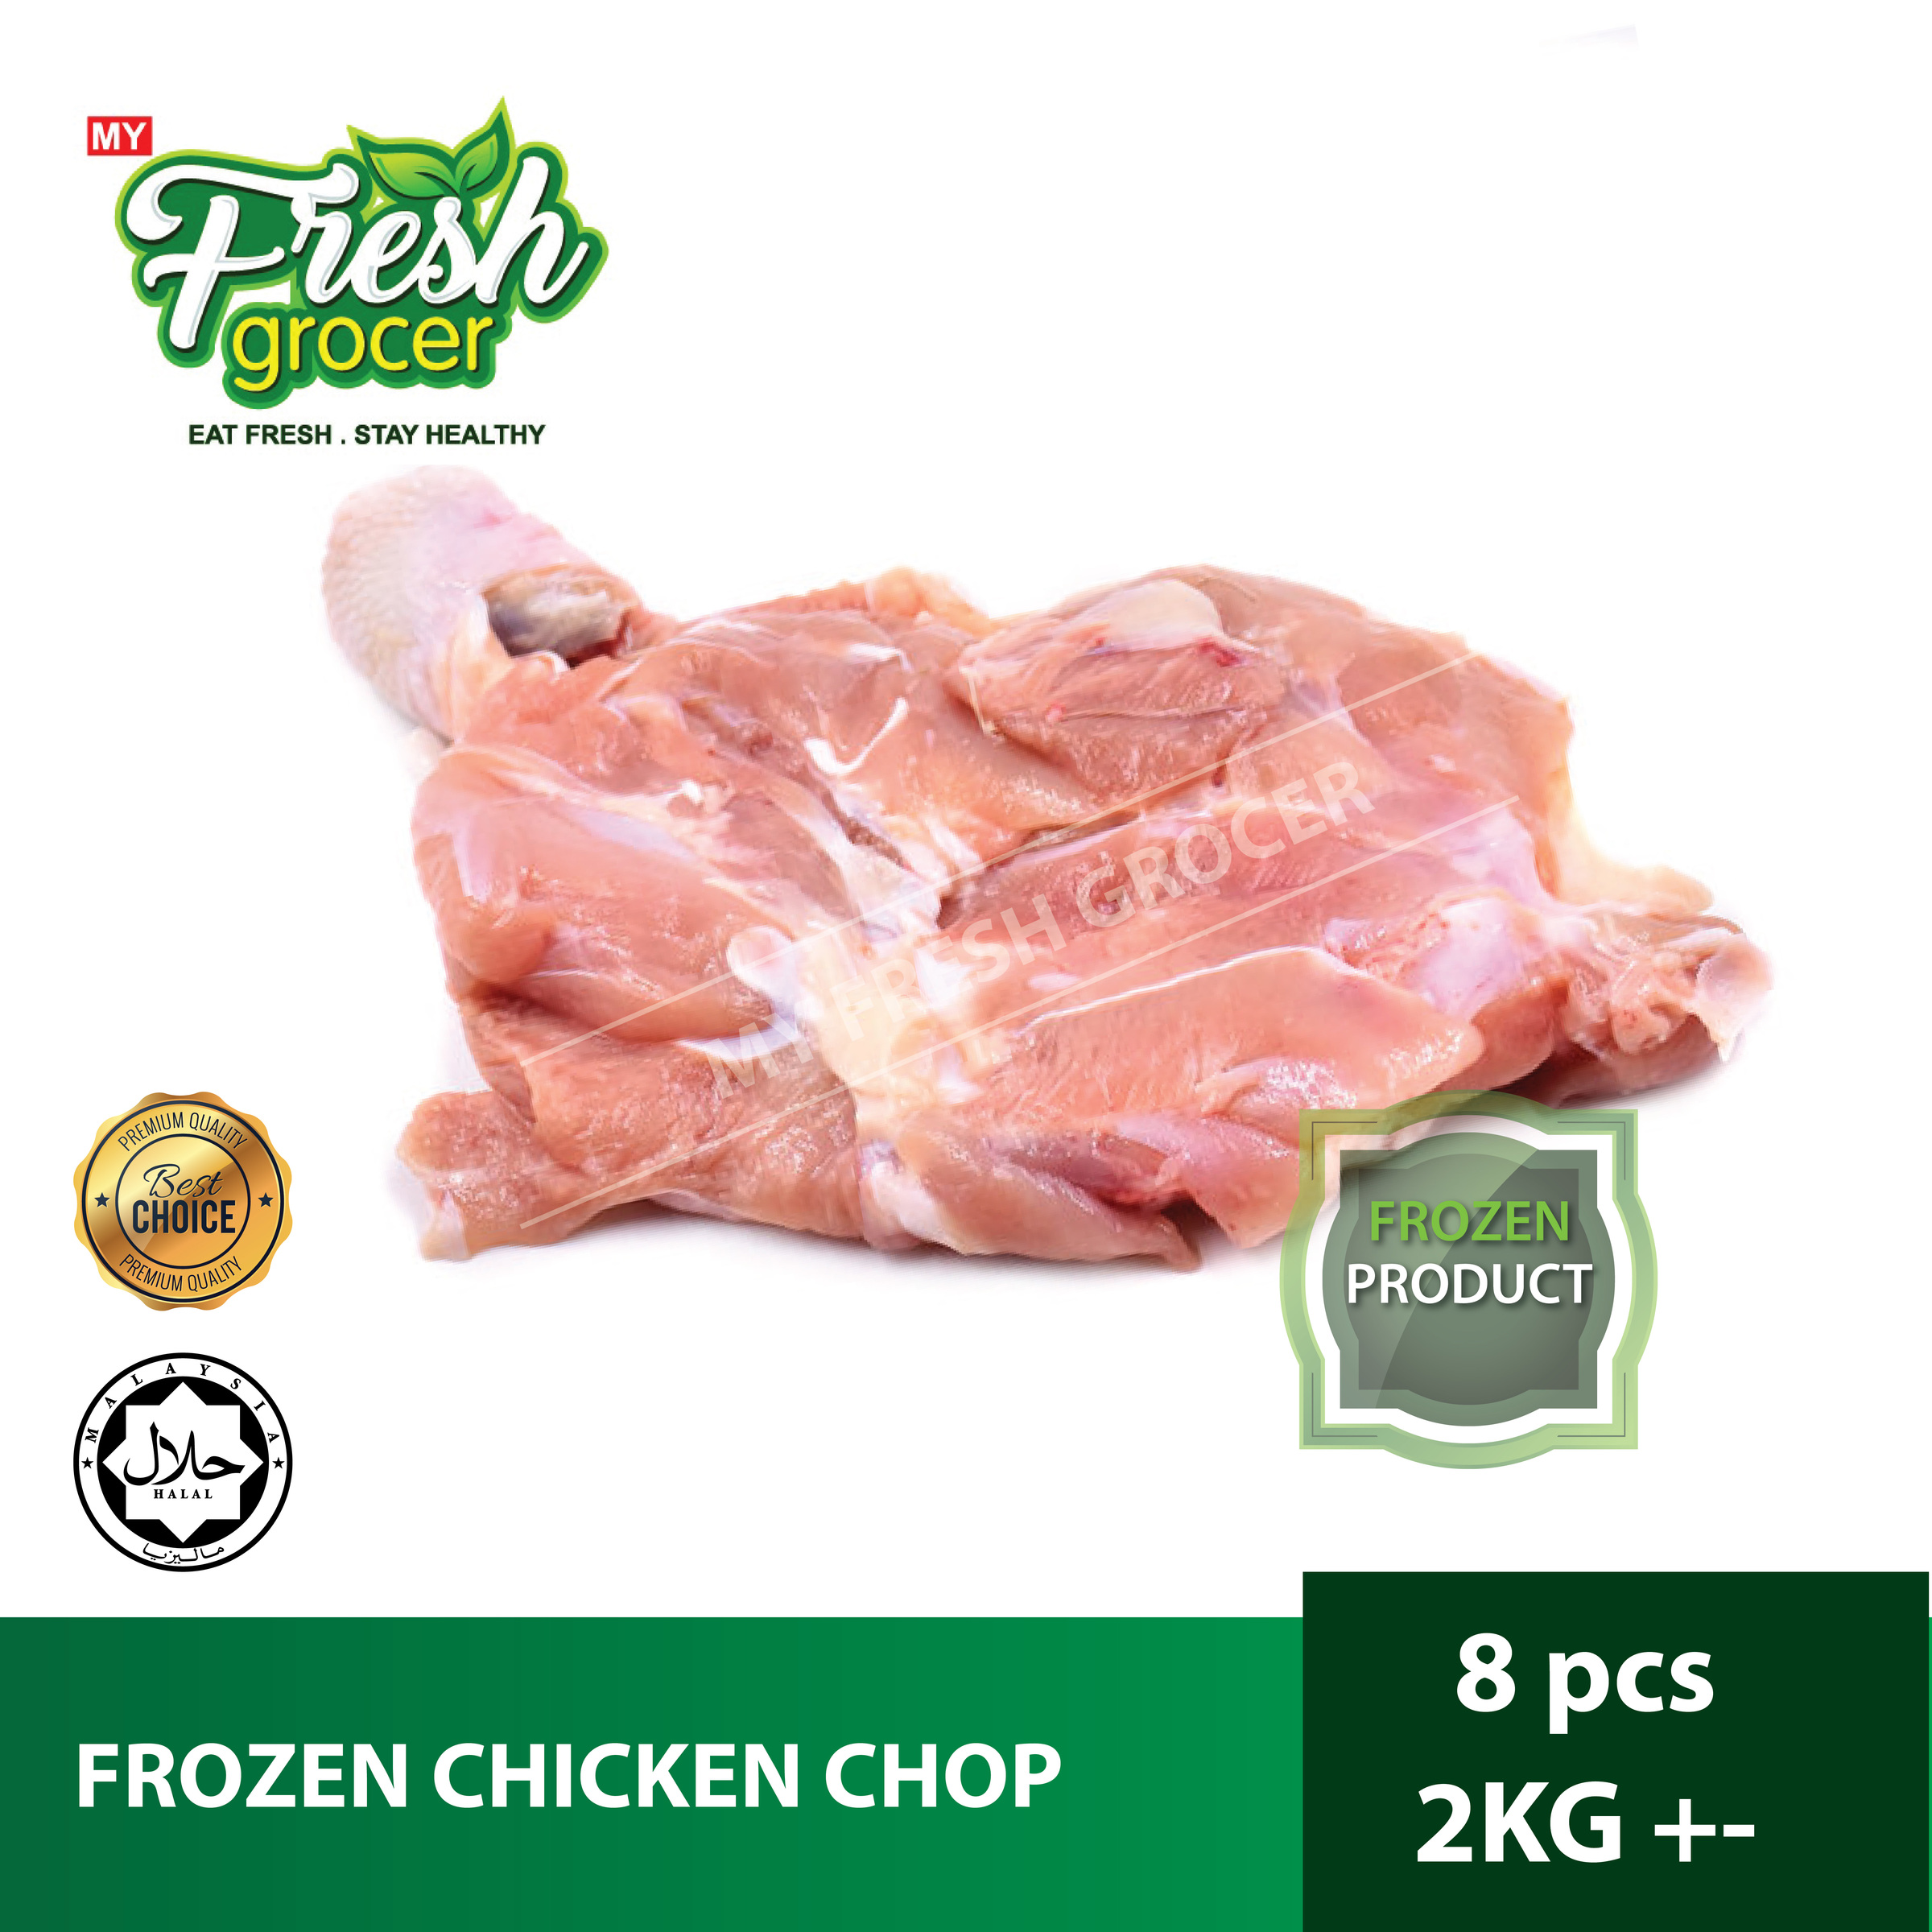 Ayam chicken chop frozen